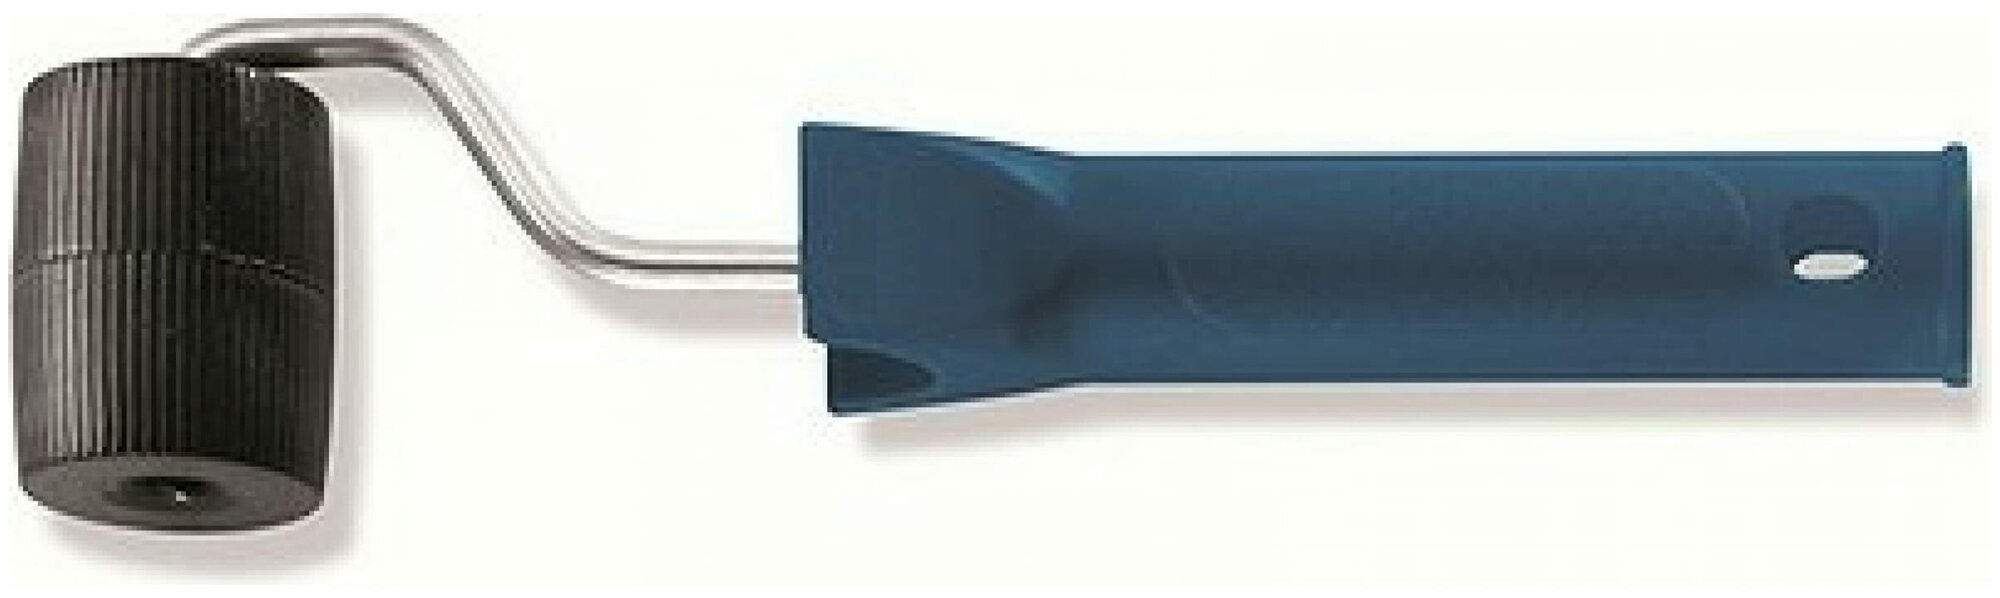 COLOR EXPERT 95875002 валик с ручкой прижимной для прикатки стыков обоев пластиковая бочка (45мм)